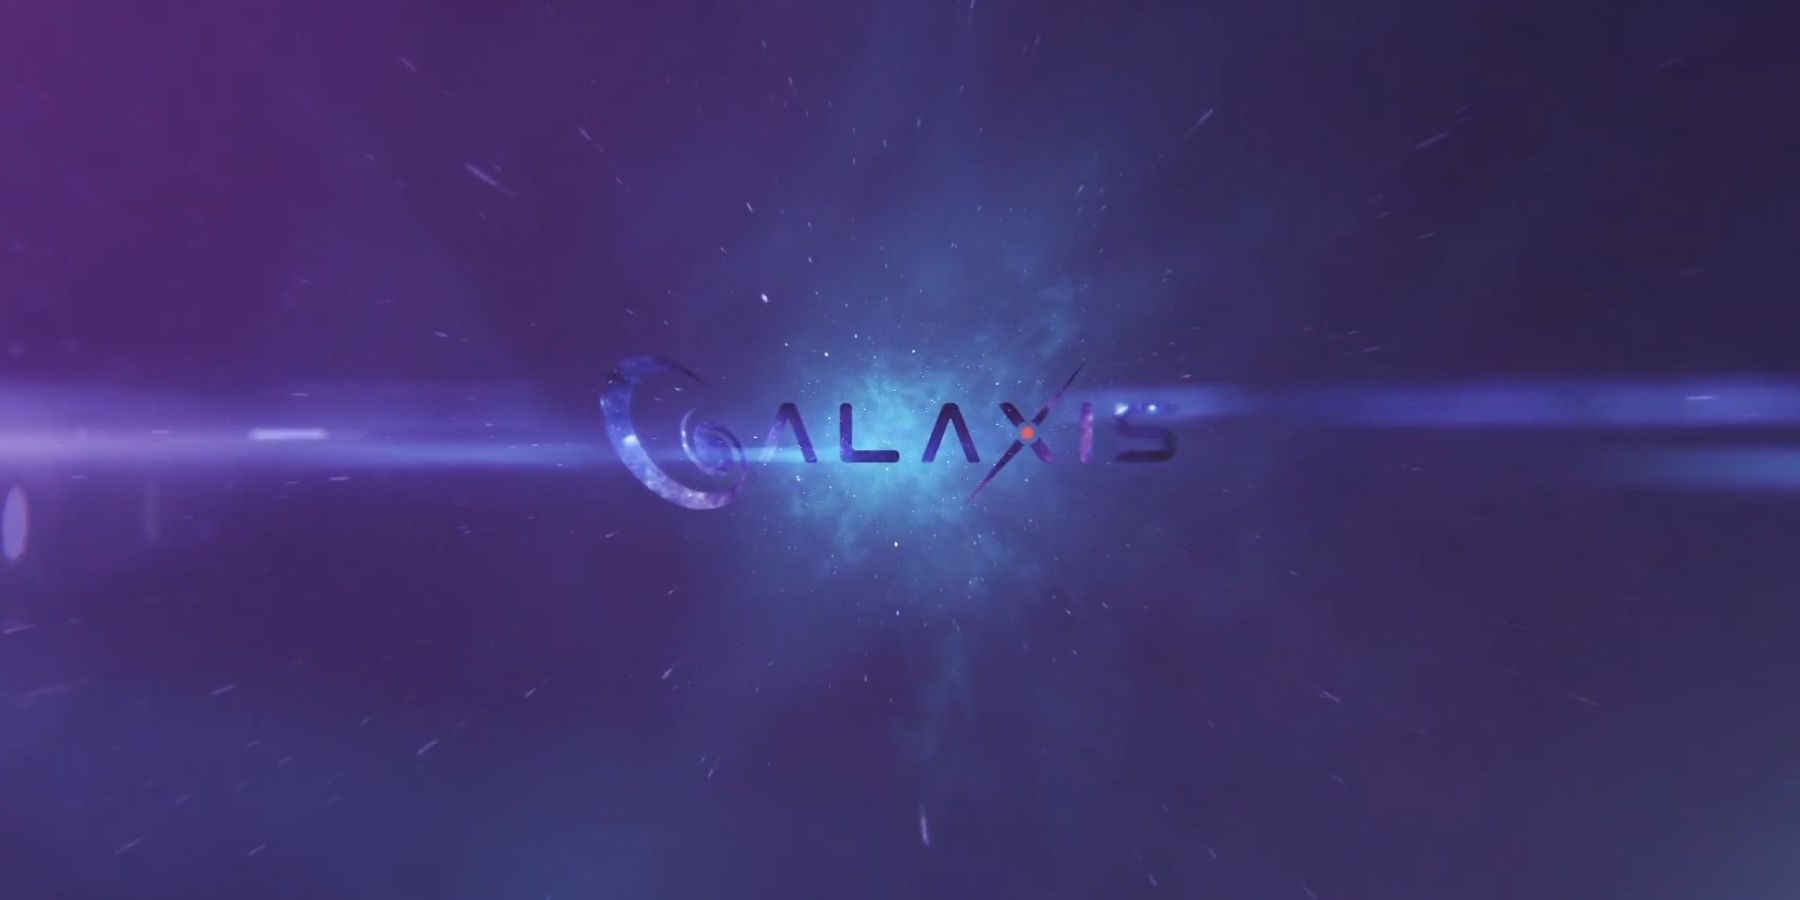 Intervista a Galaxis: CEO Max Gallardo Dettagli Sistemi di punti di streaming Platform, moderazione della comunità e altro ancora